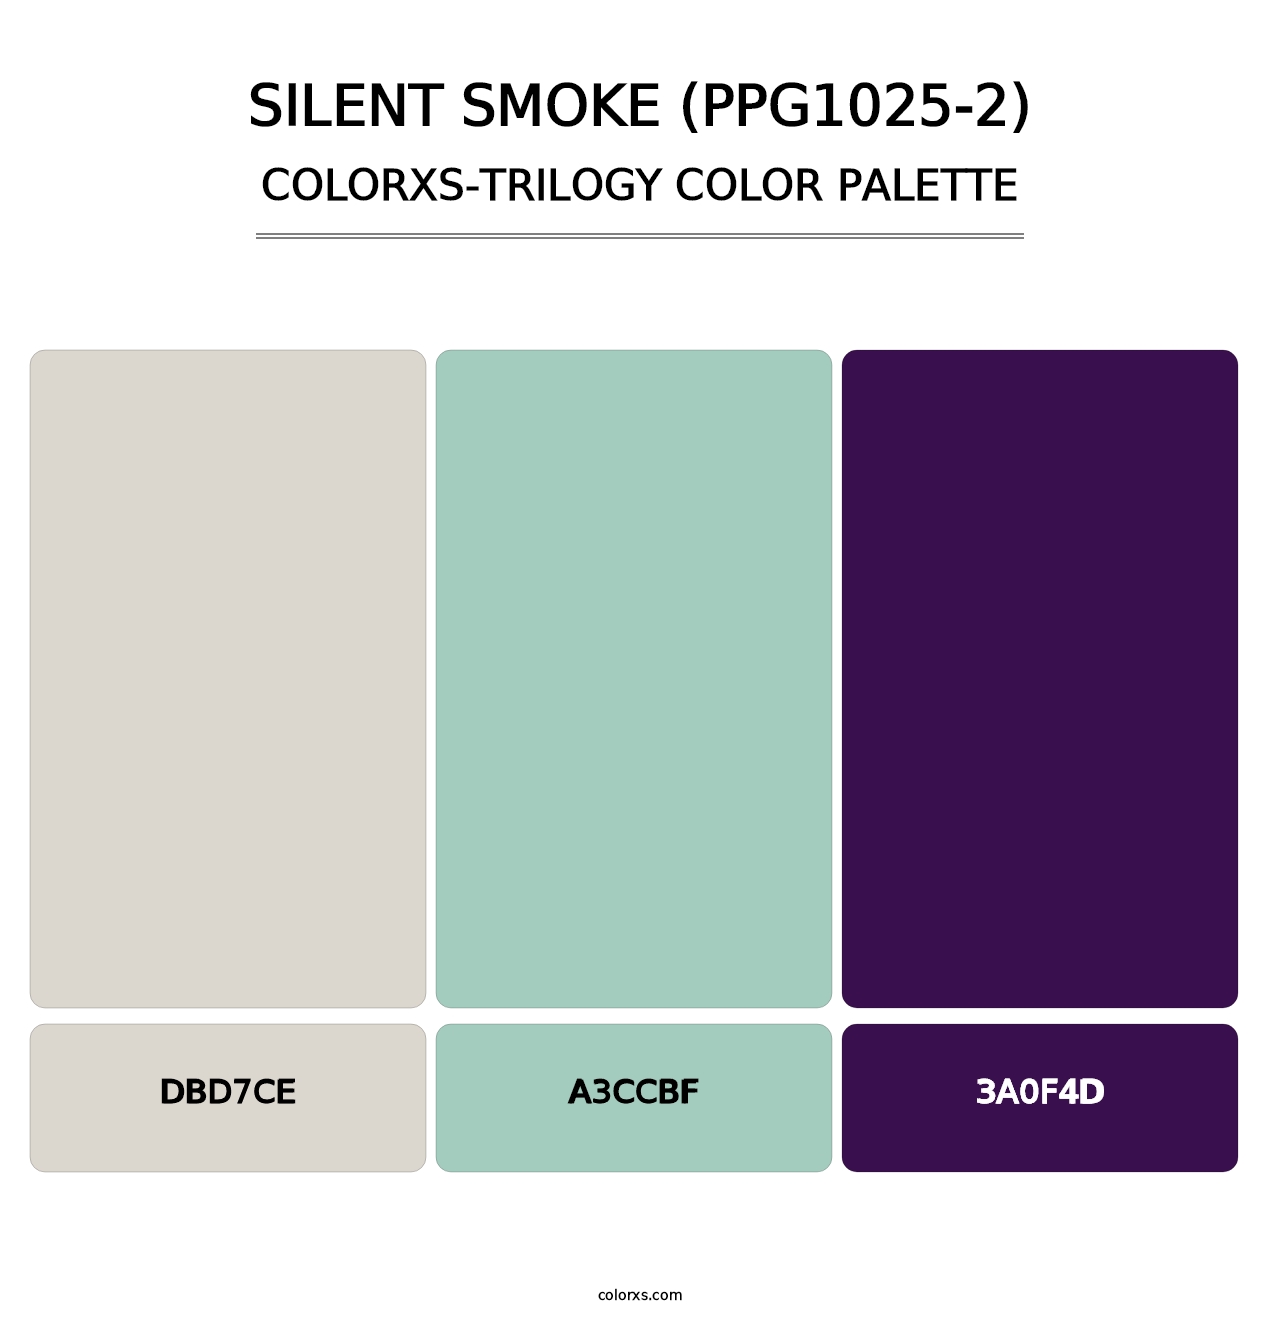 Silent Smoke (PPG1025-2) - Colorxs Trilogy Palette